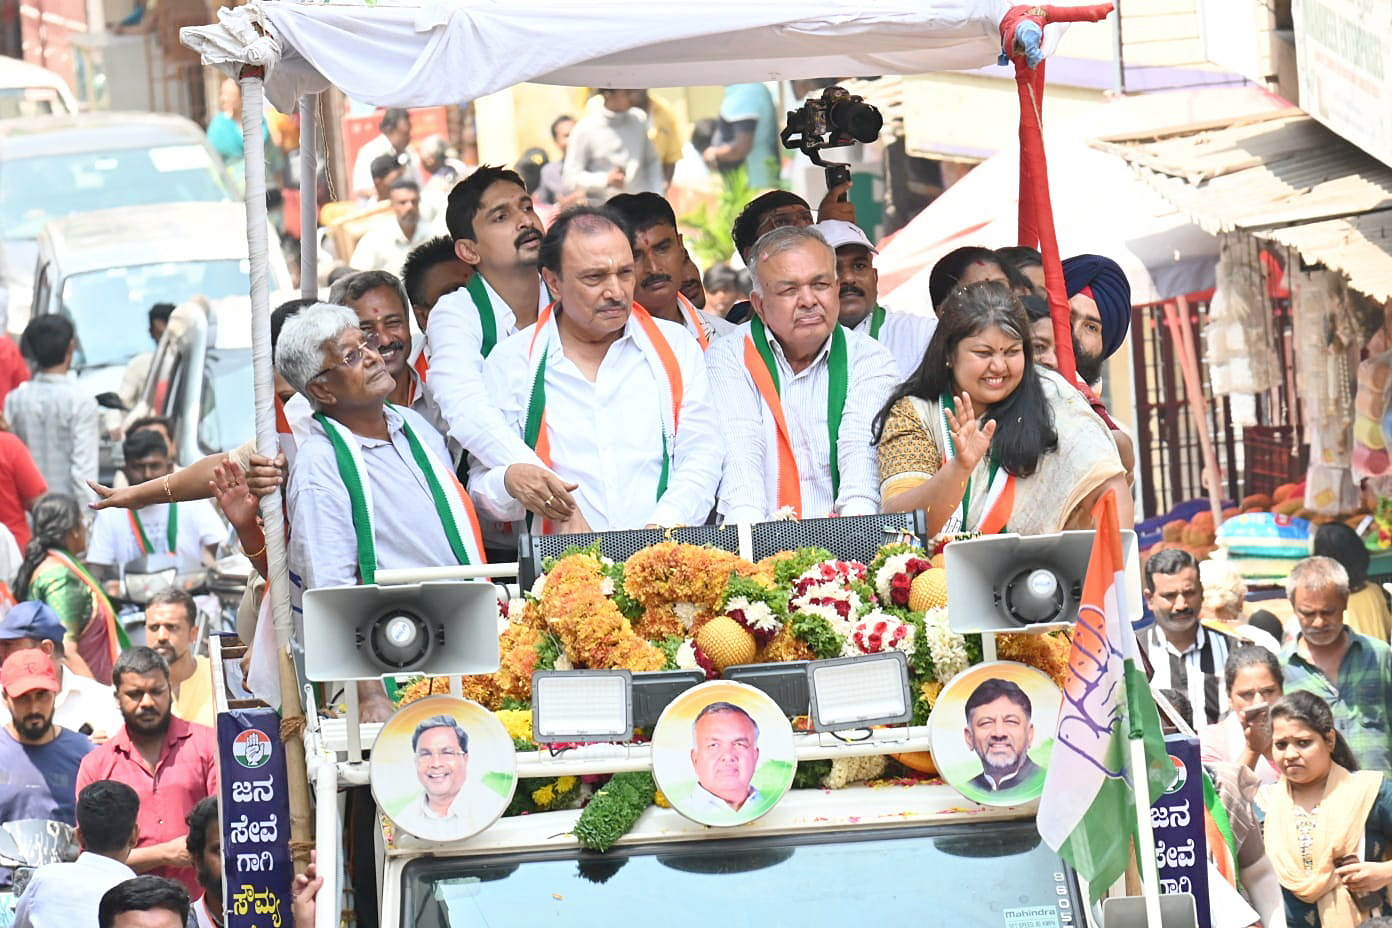 बेंगलूरु दक्षिण लोकसभा क्षेत्र से कांग्रेस उम्मीदवार सौम्या रेड्डी ने शुक्रवार
को समर्थकों के साथ किया चुनाव प्रचार